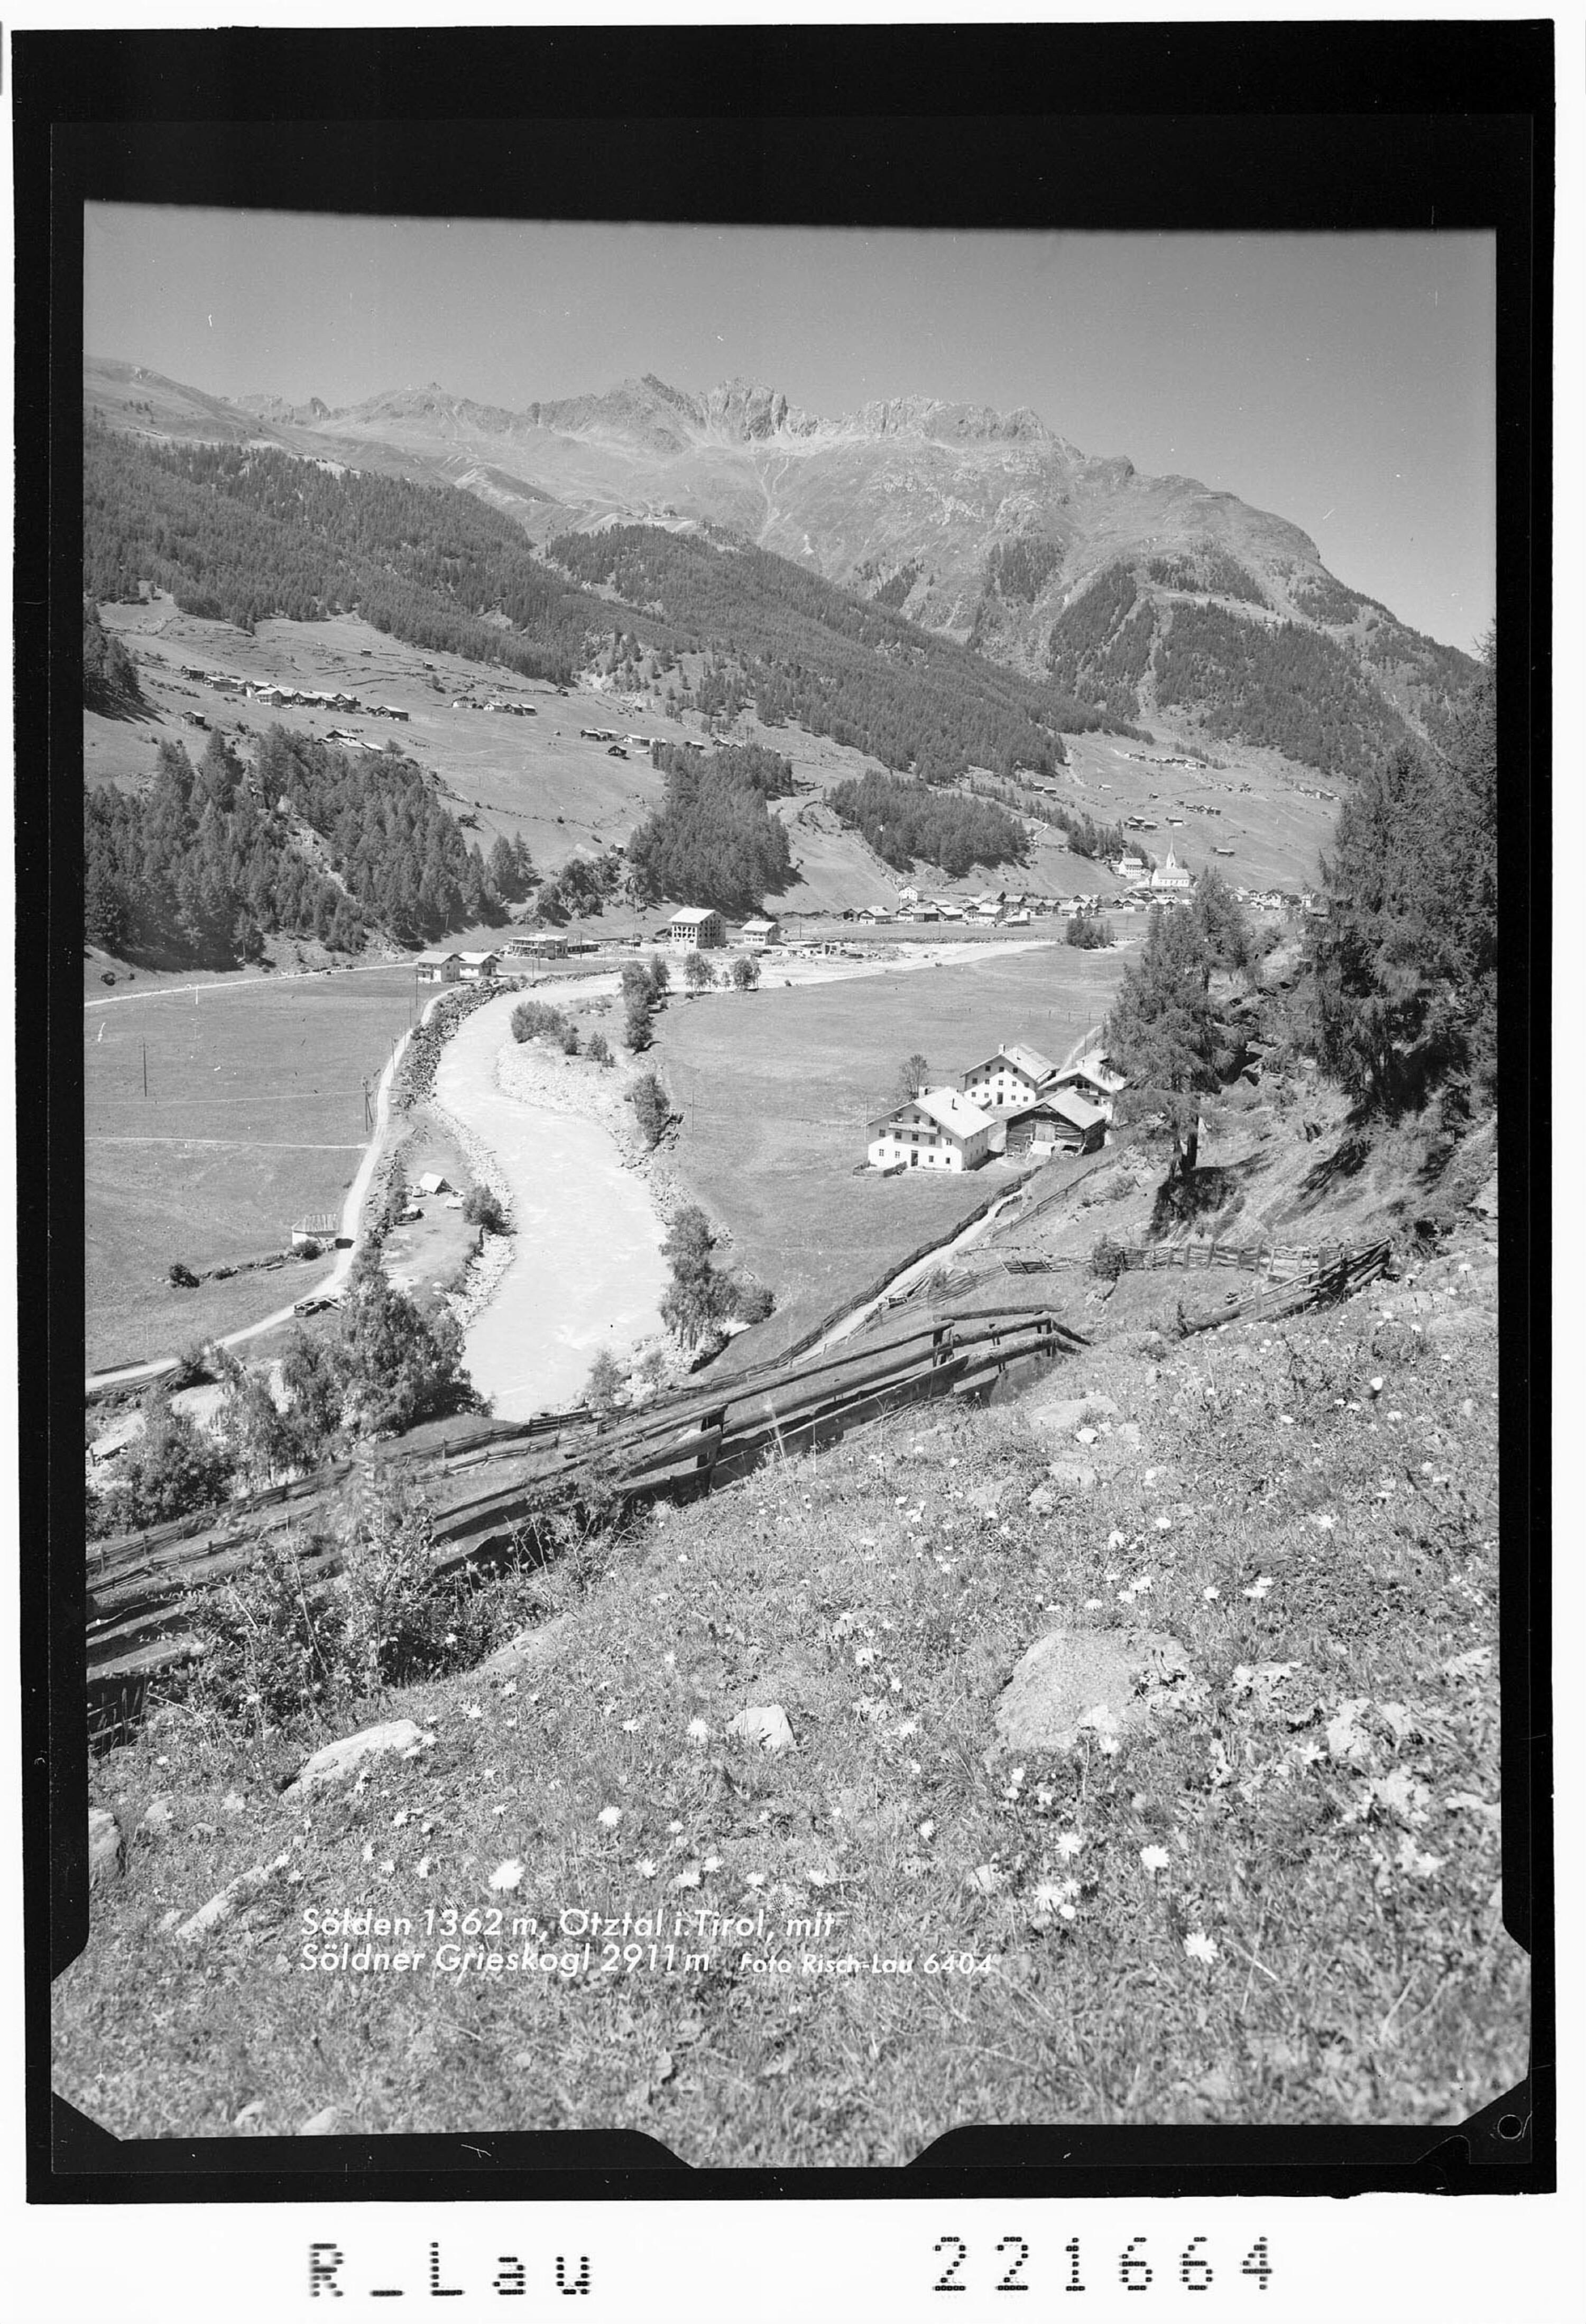 Sölden 1362 m, Ötztal in Tirol mit Söldner Grieskogel 2911 m></div>


    <hr>
    <div class=